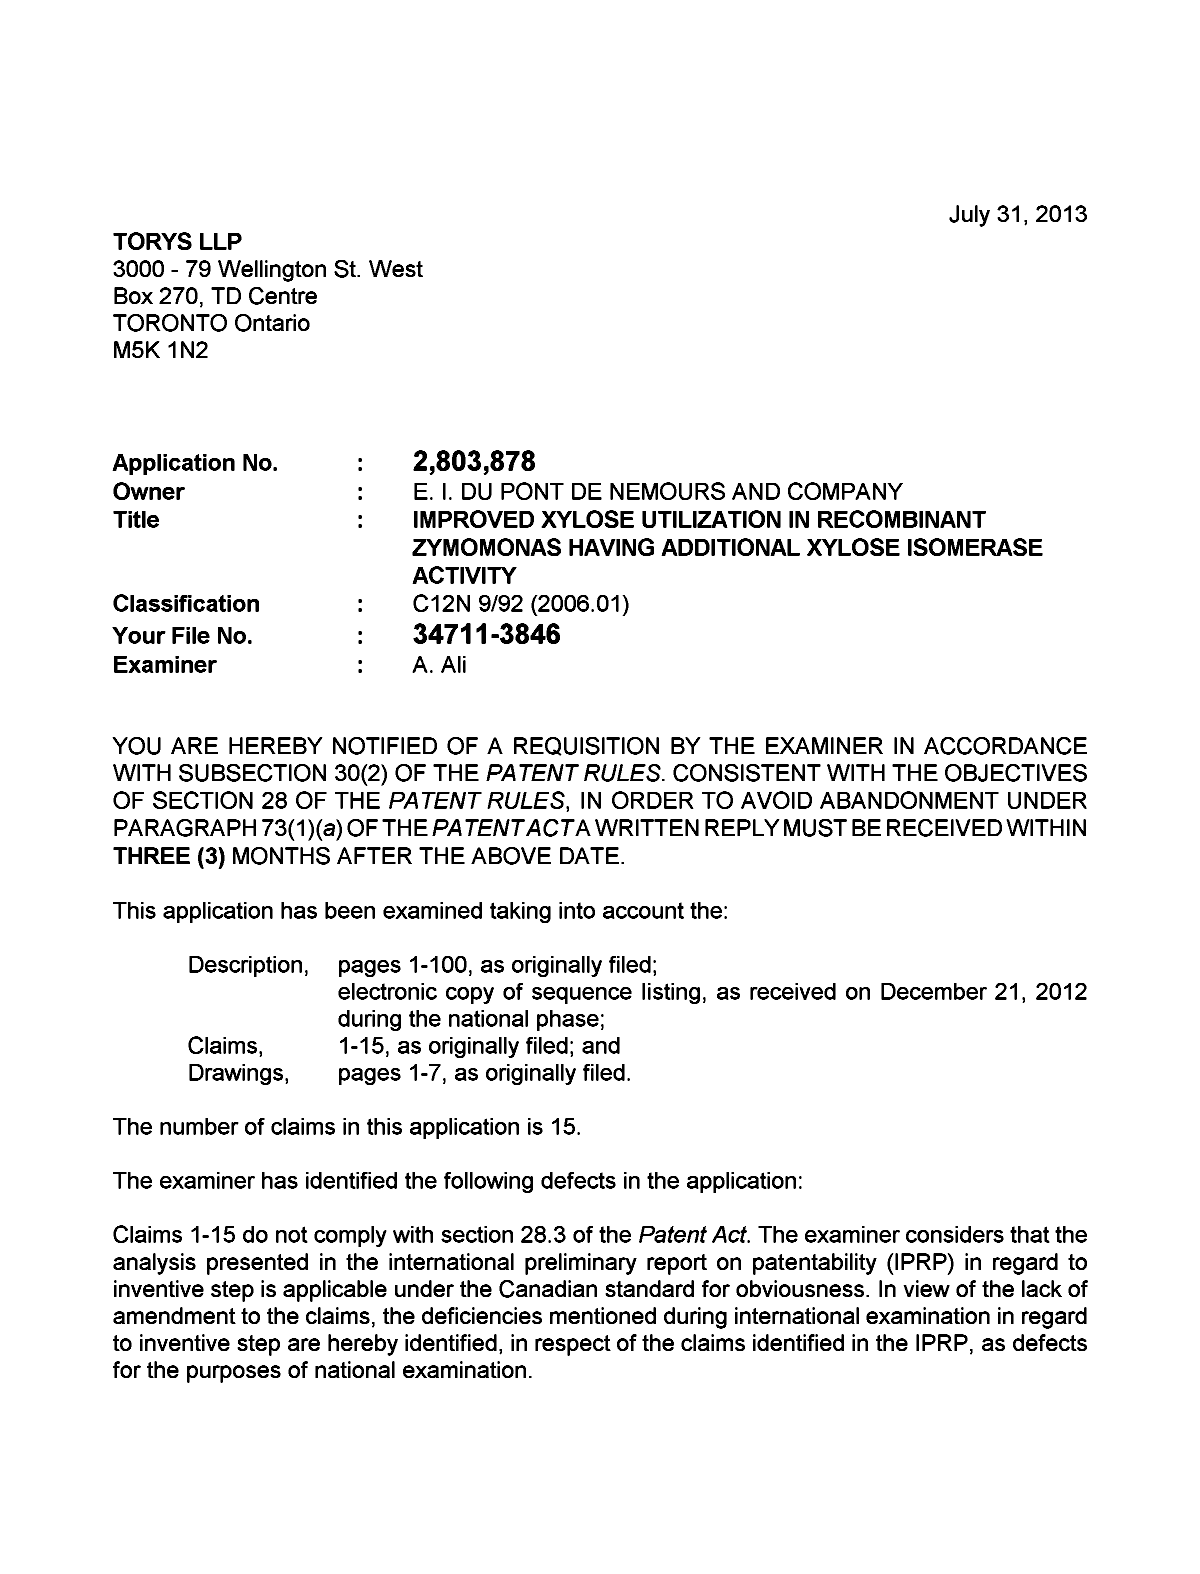 Document de brevet canadien 2803878. Poursuite-Amendment 20130731. Image 1 de 2